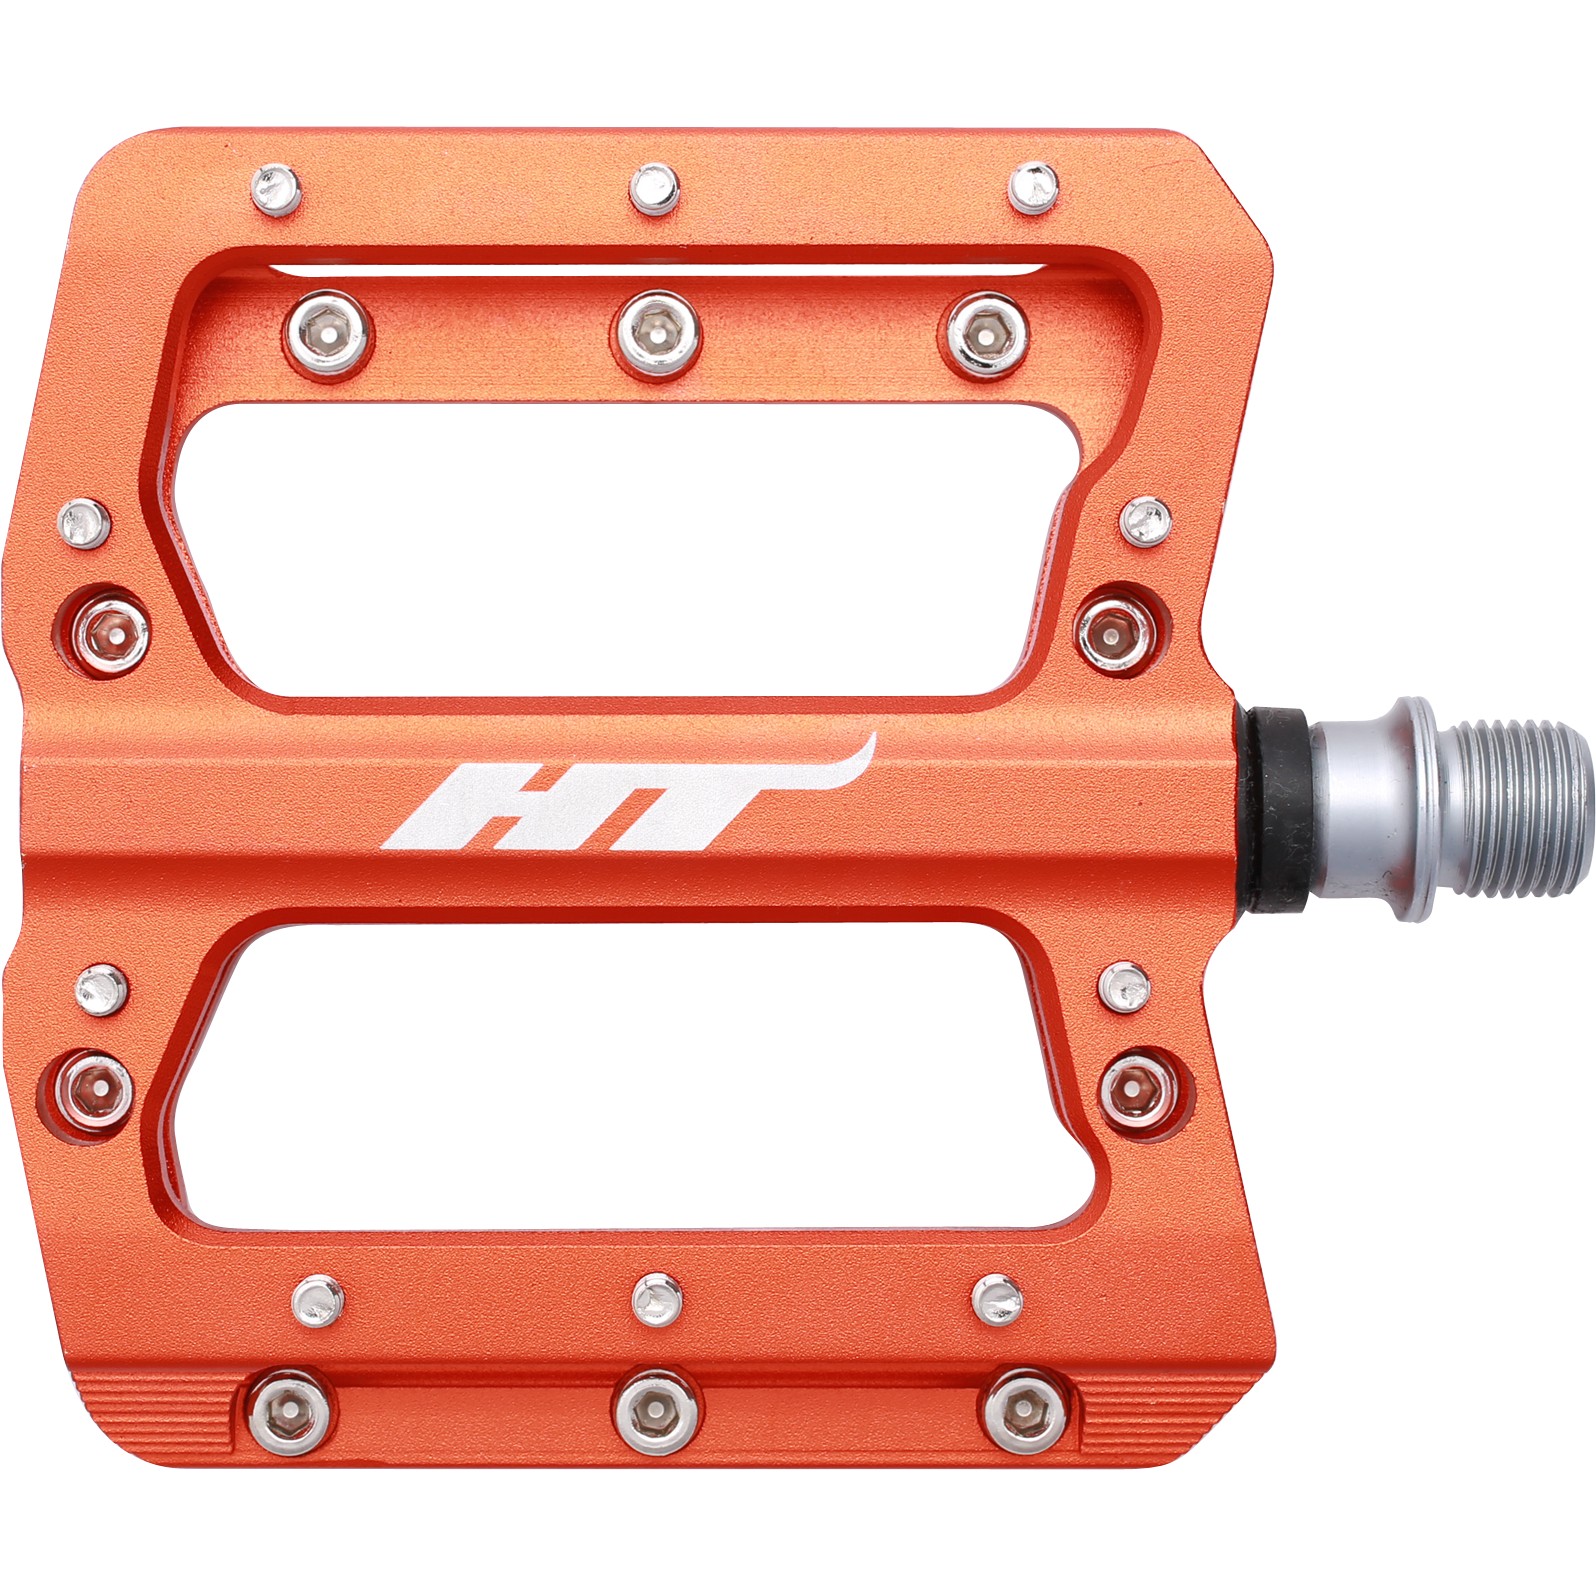 Image of HT AN14 NANO Flat Pedal - orange